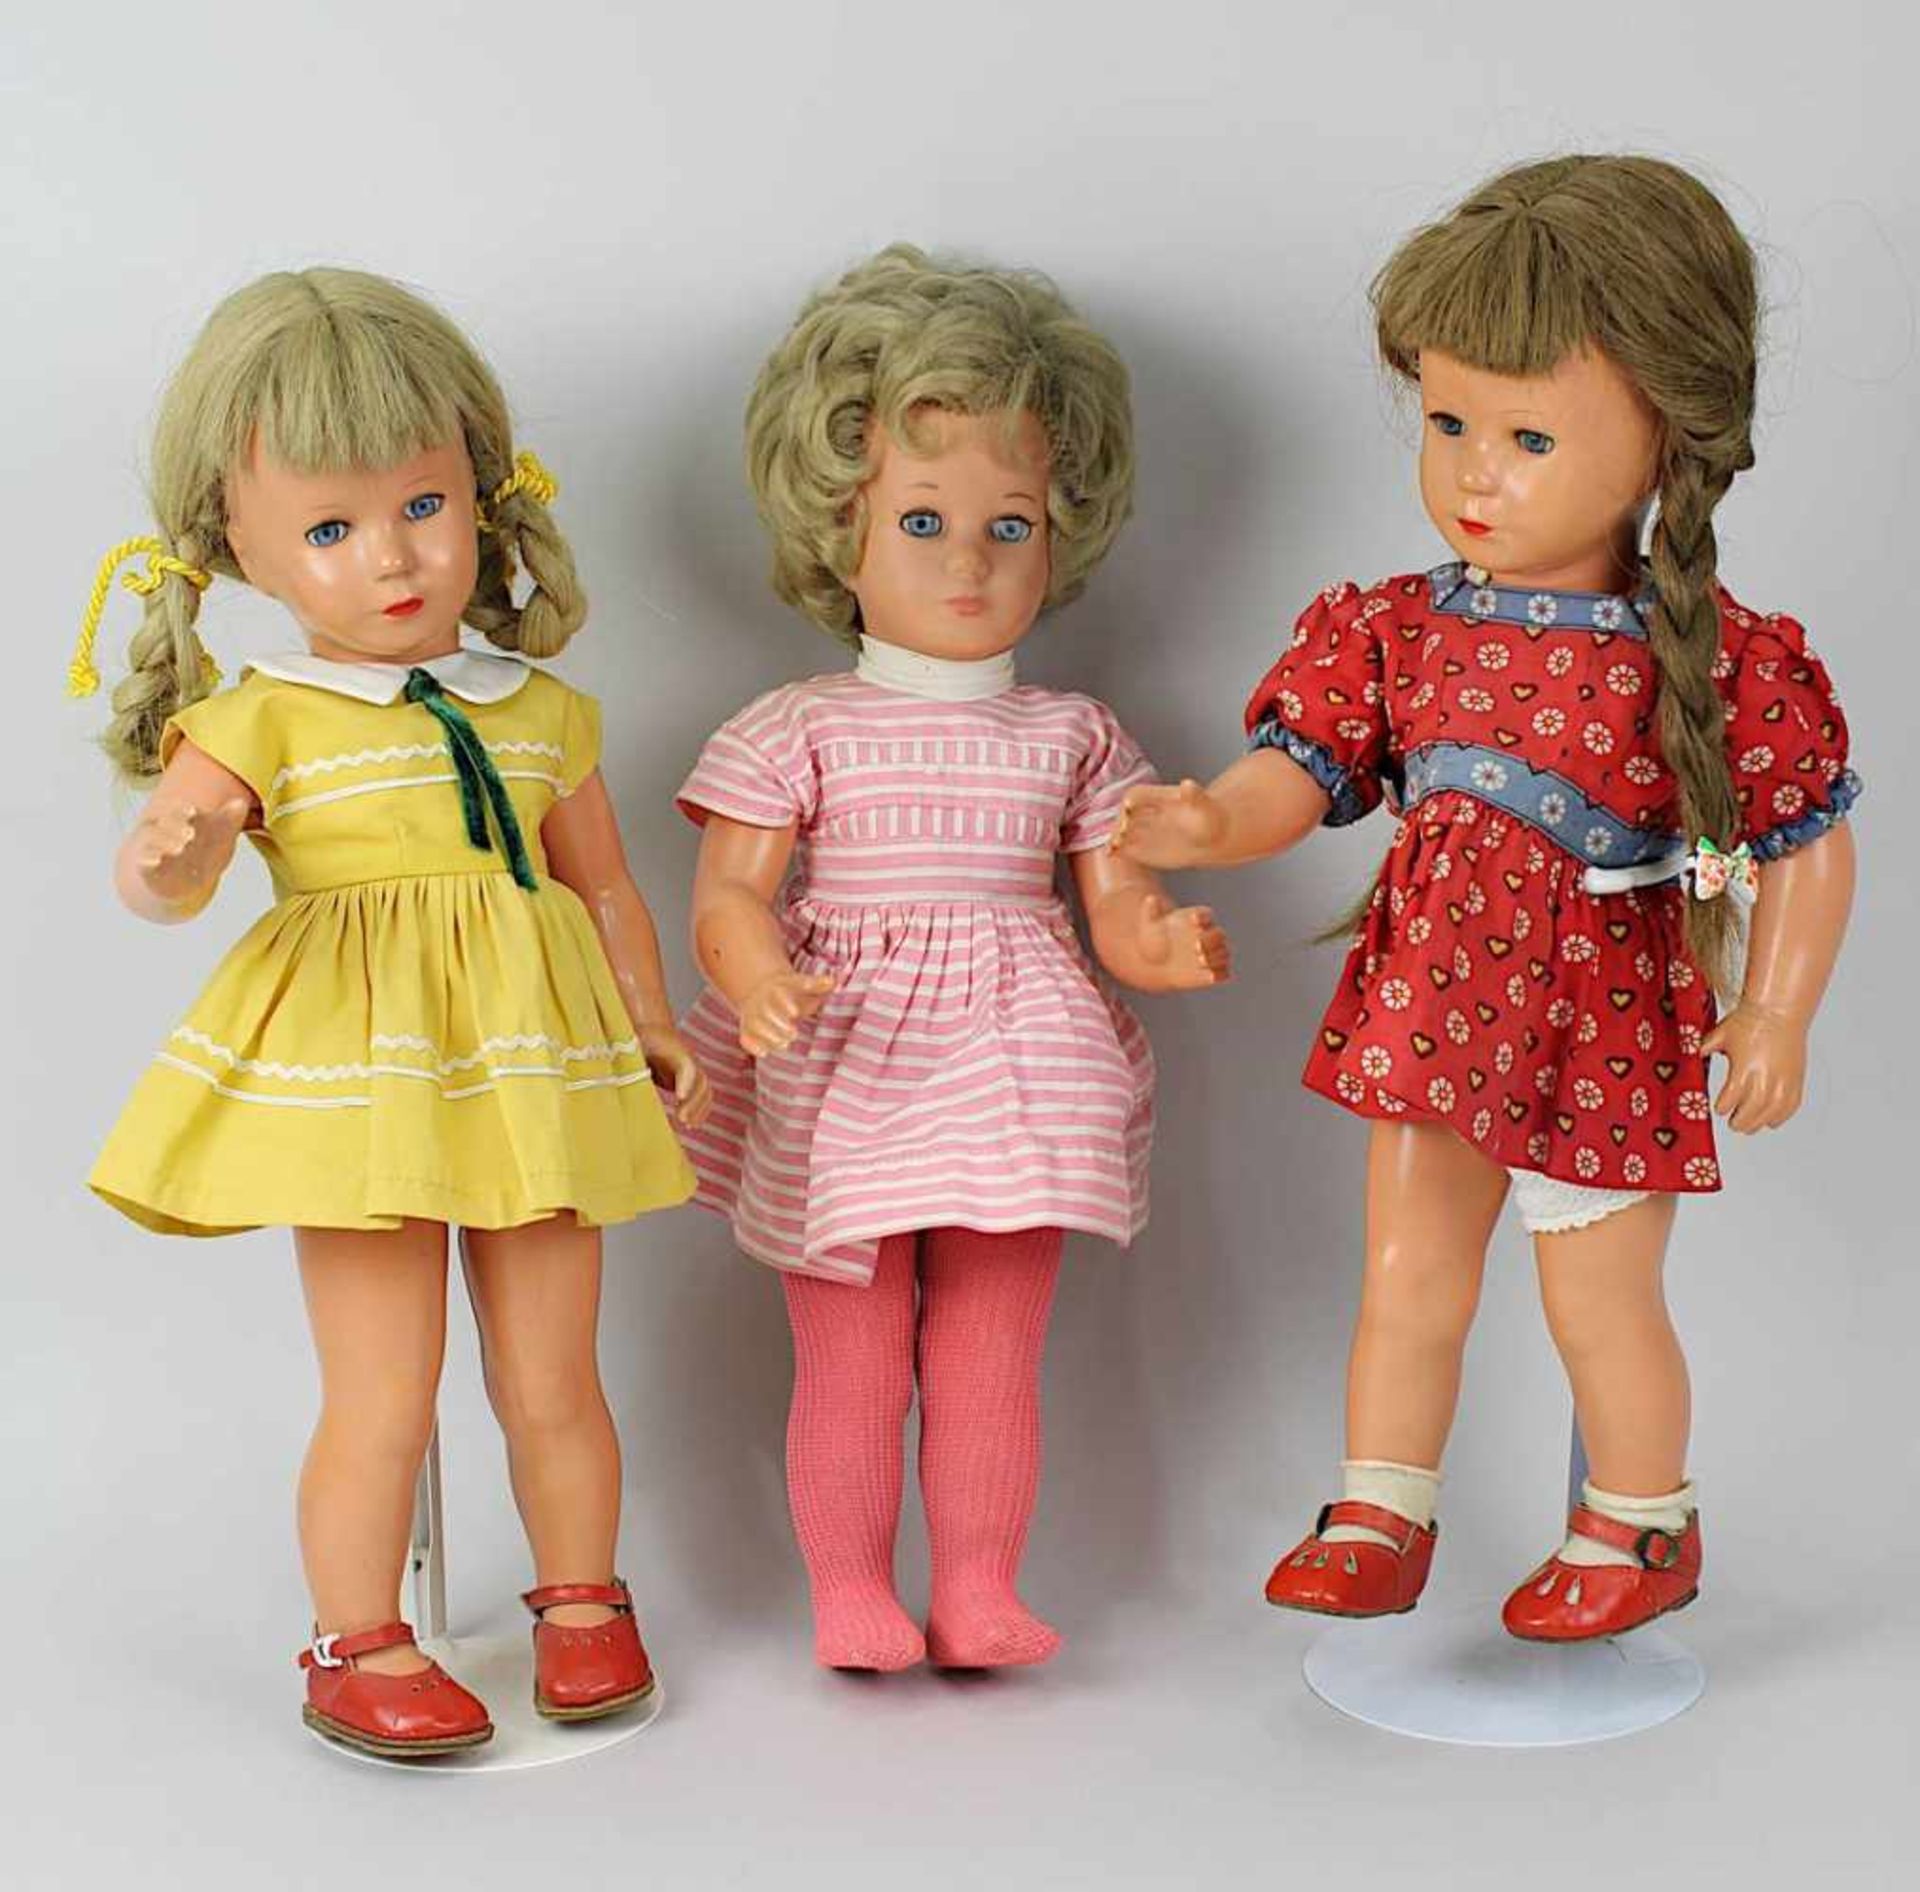 3 Schildkröt Modell Käthe Kruse Mädchenpuppen, davon zwei um 1970, Celluloid, die dritte um 1980 mit